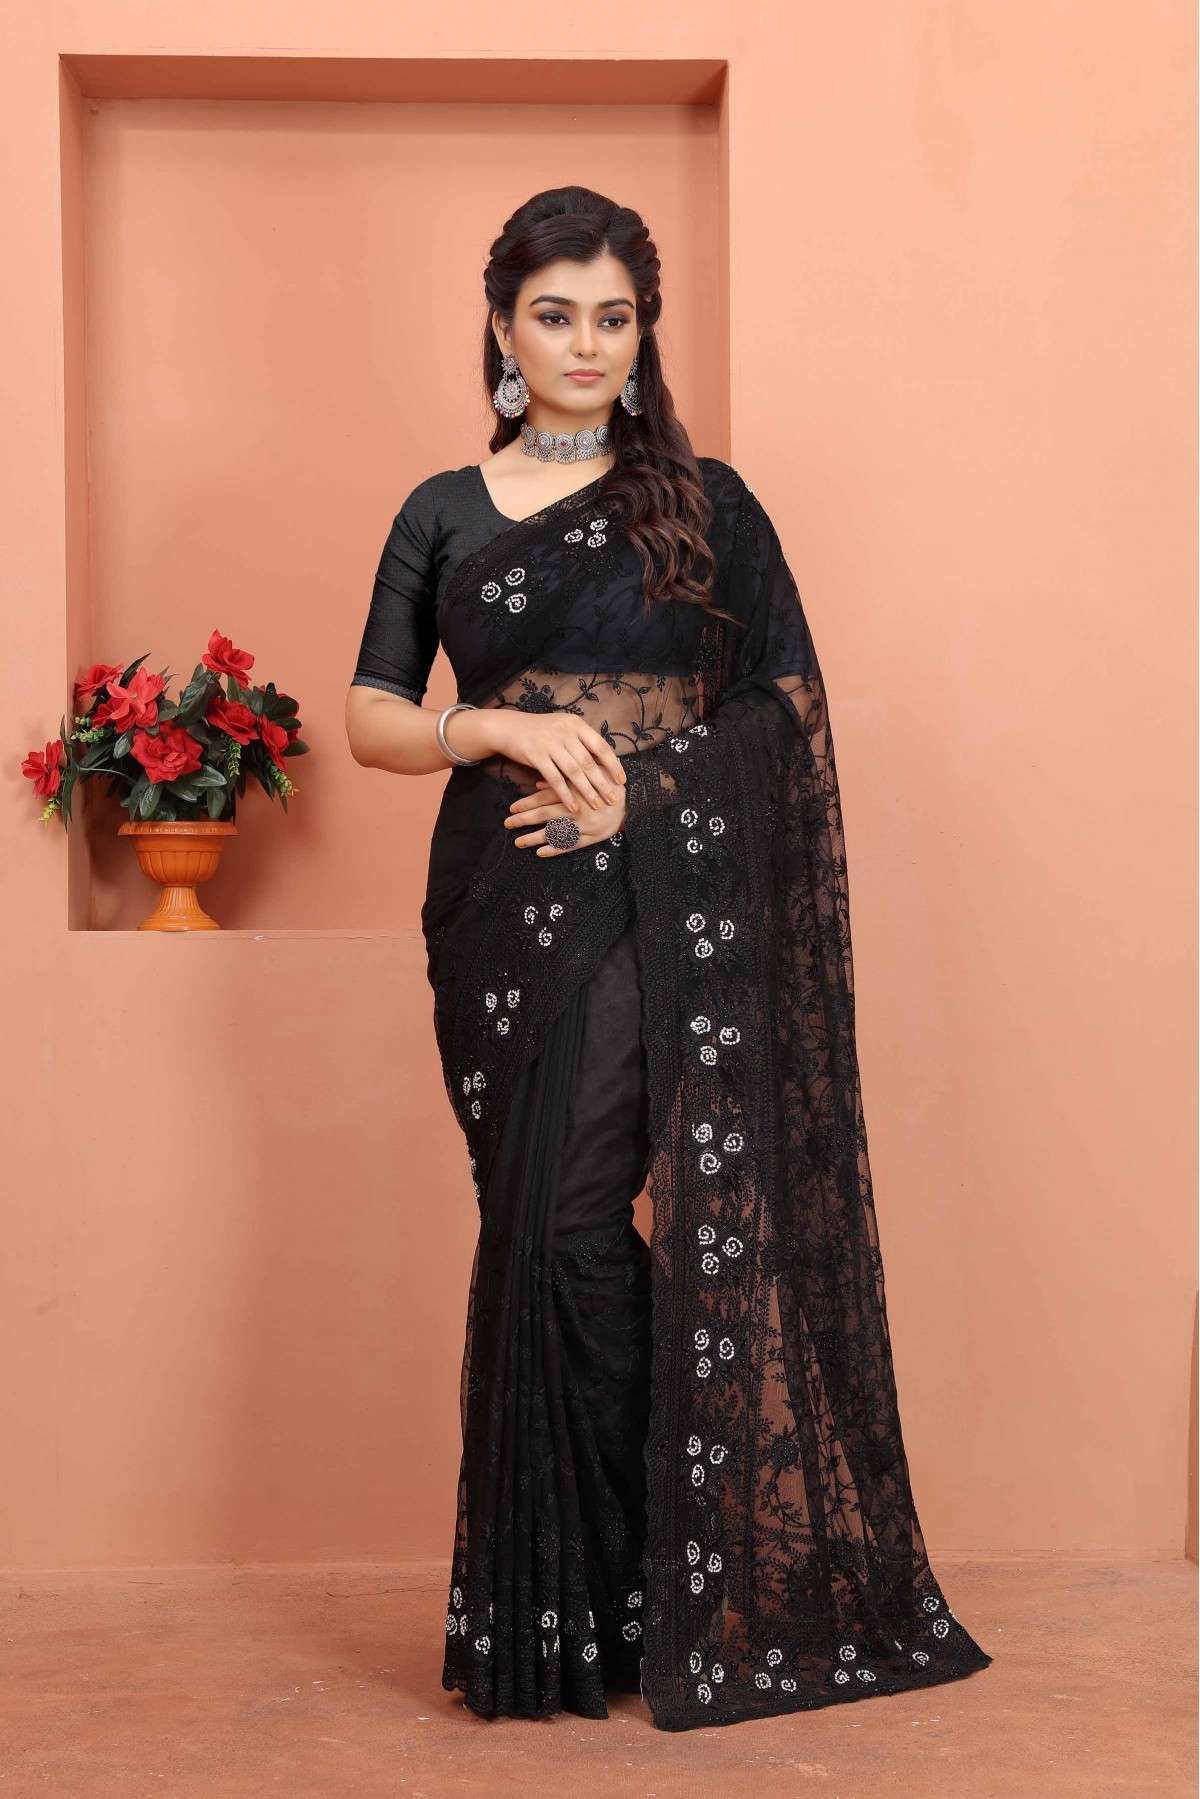 Net Embroidery Saree In Black Colour - SR5641359